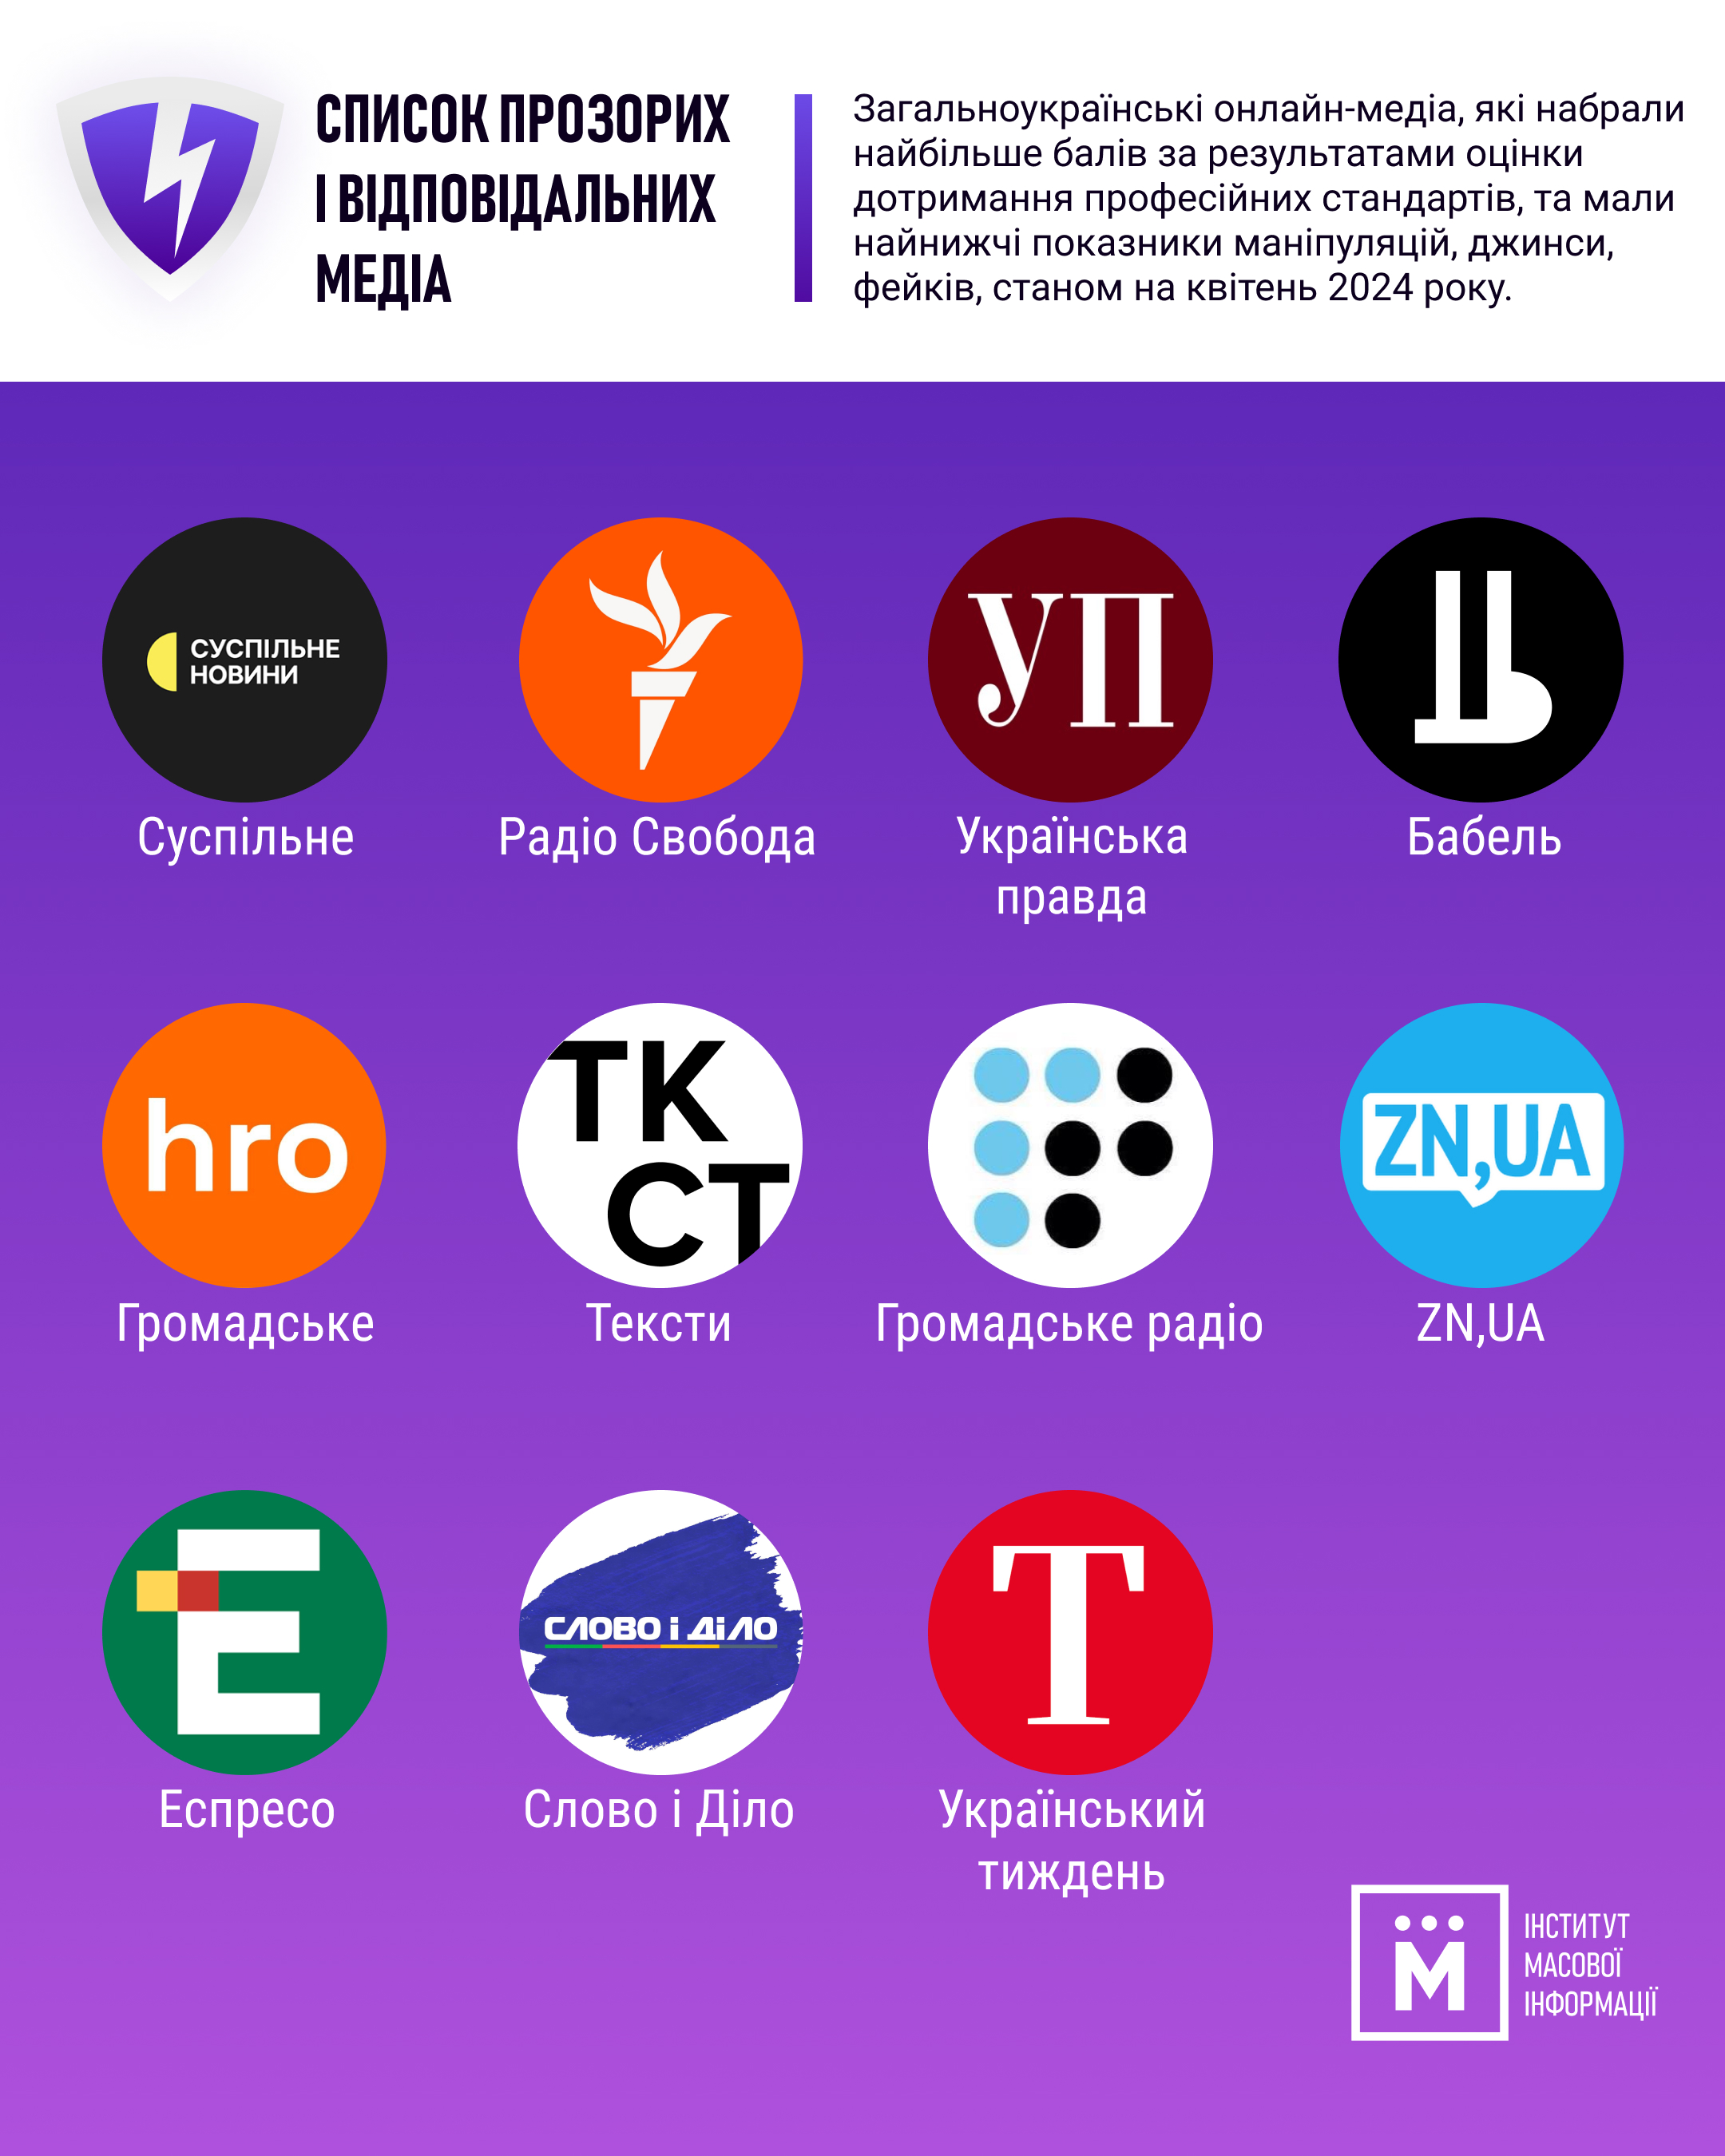 Фото - Громадське радіо увійшло до Білого списку найякісніших українських онлайн-медіа